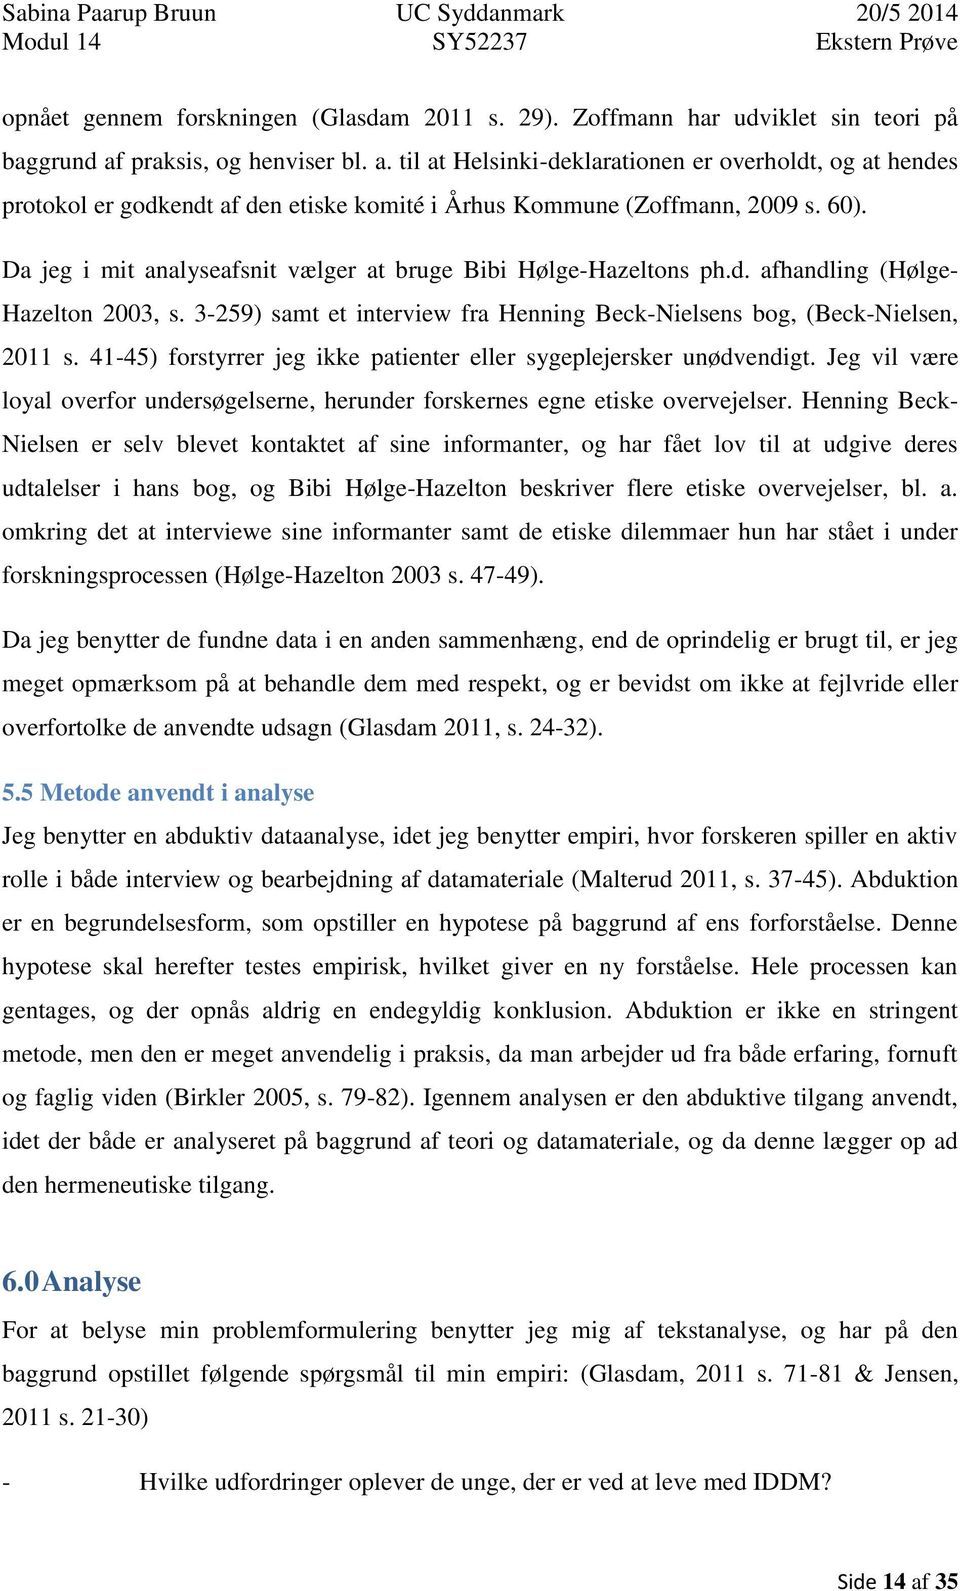 Da jeg i mit analyseafsnit vælger at bruge Bibi Hølge-Hazeltons ph.d. afhandling (Hølge- Hazelton 2003, s. 3-259) samt et interview fra Henning Beck-Nielsens bog, (Beck-Nielsen, 2011 s.